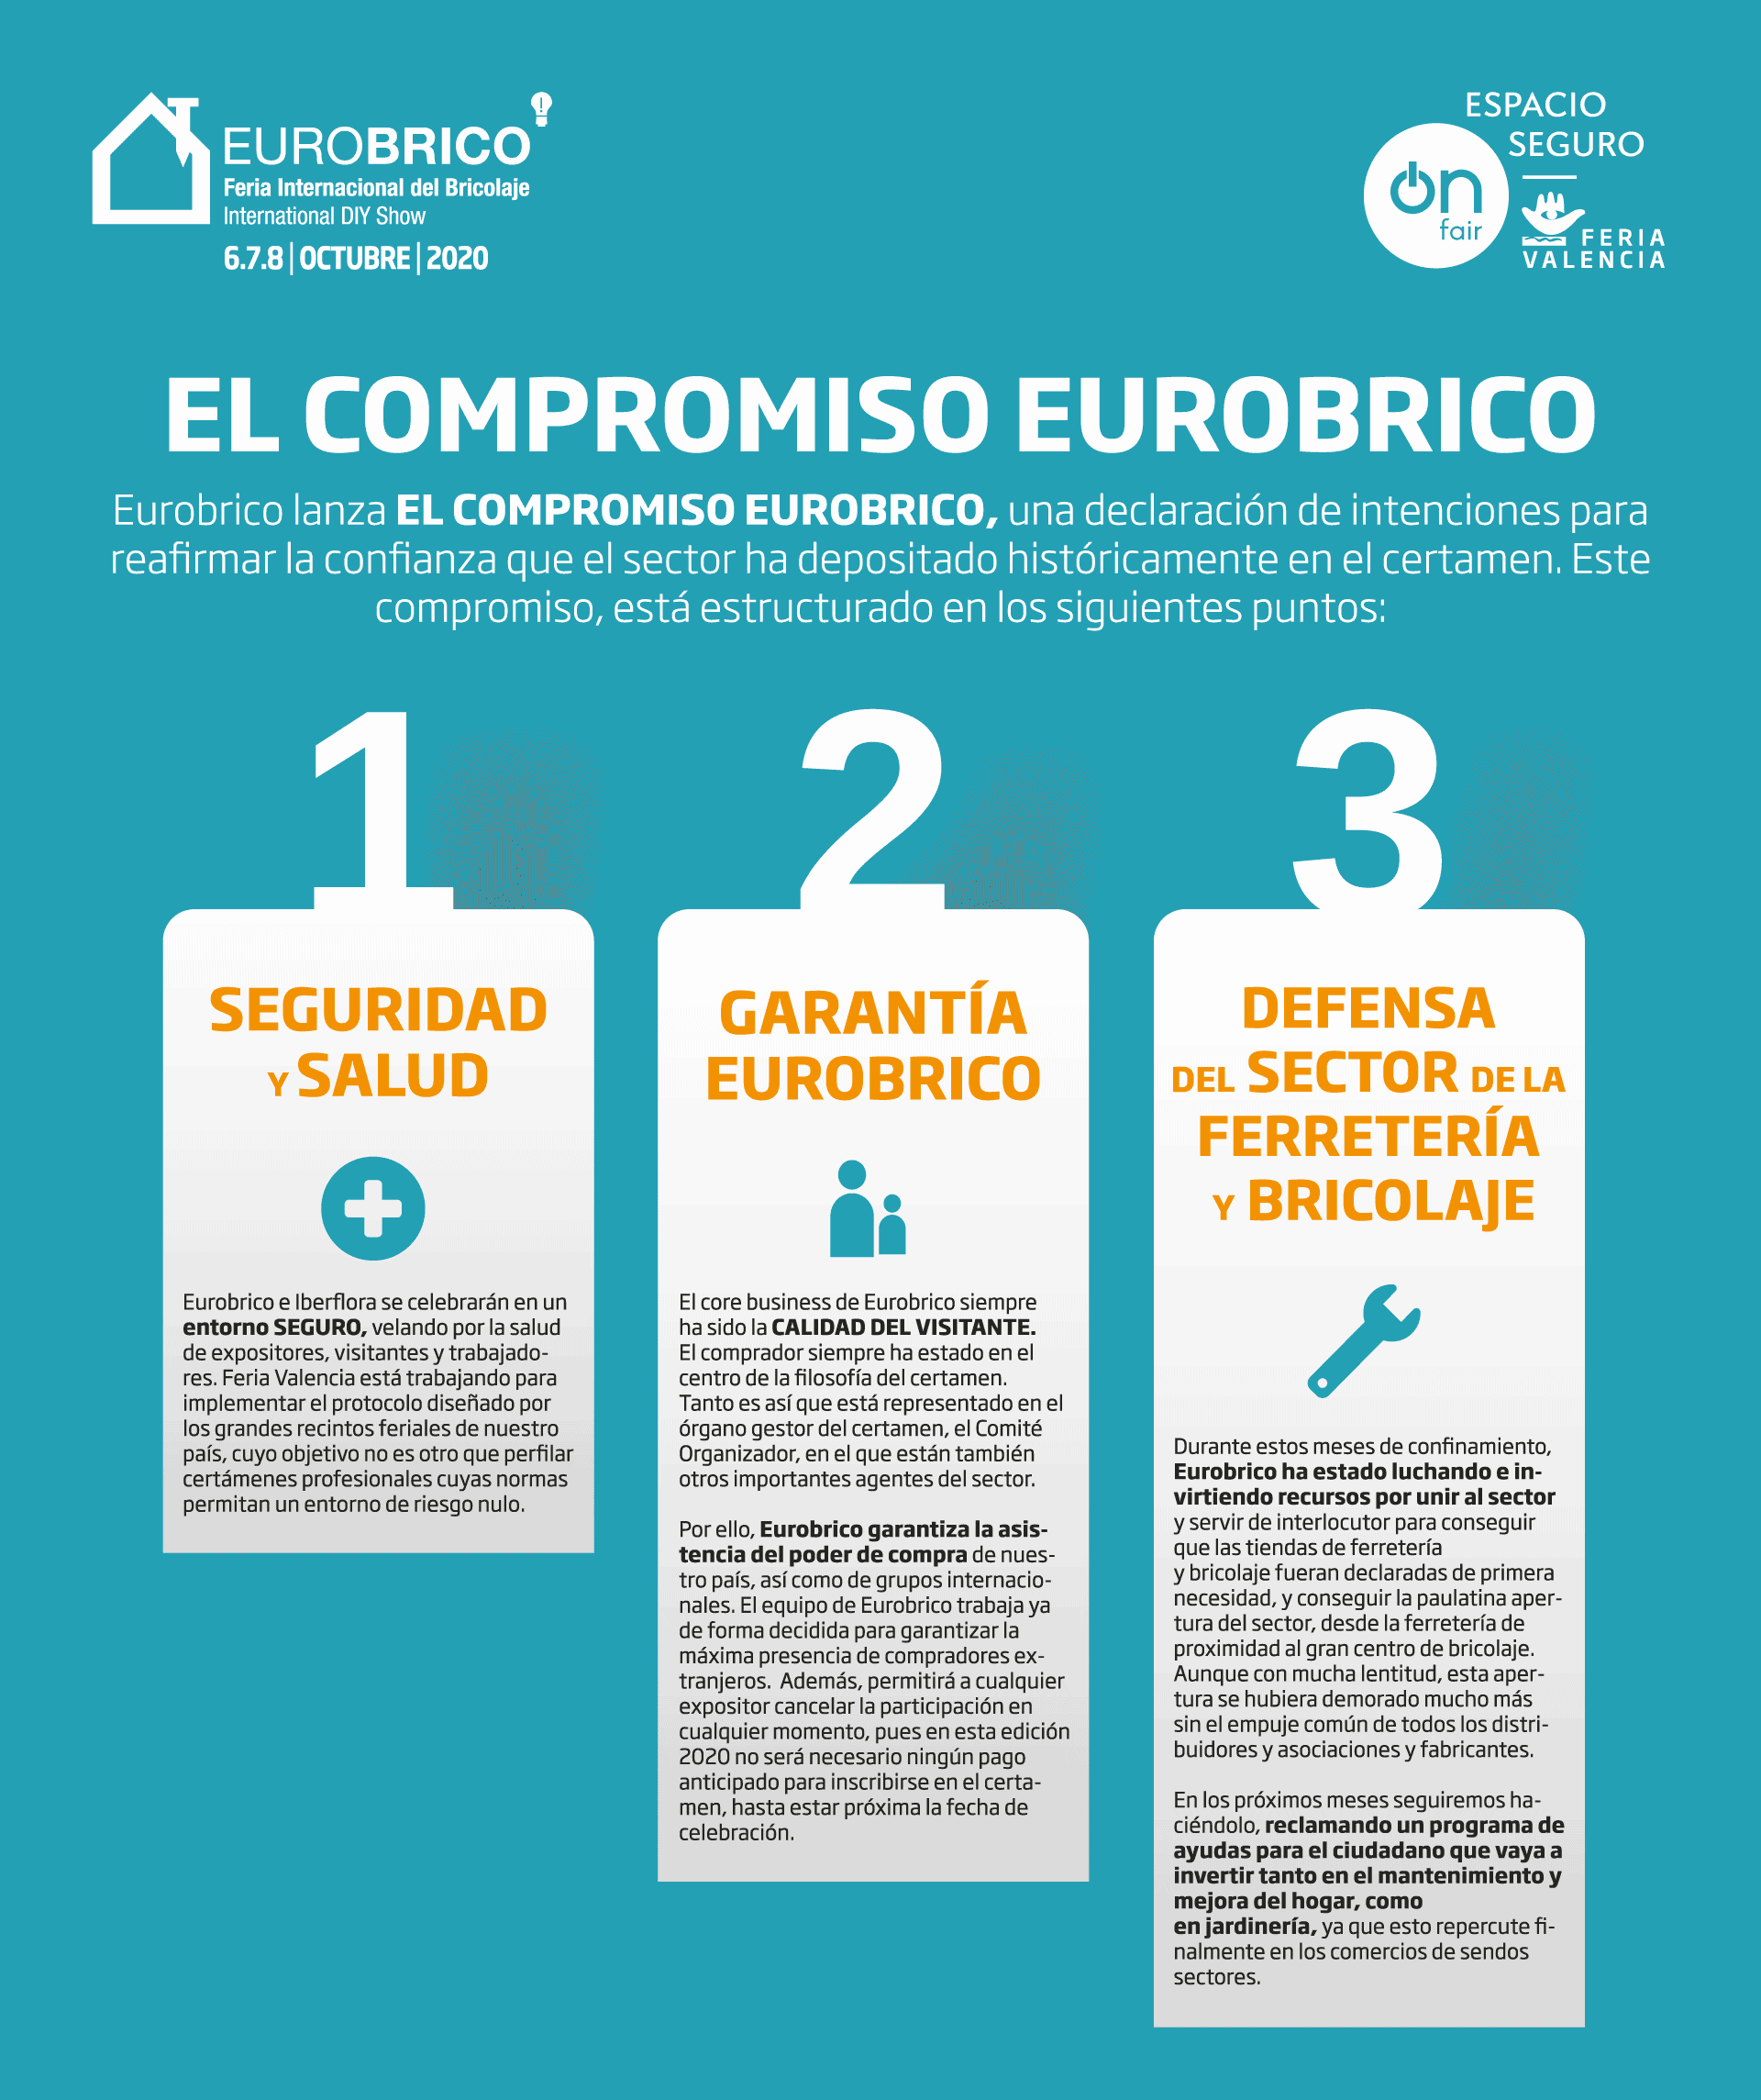 Eurobrico lanza el COMPROMISO EUROBRICO para apoyar al sector